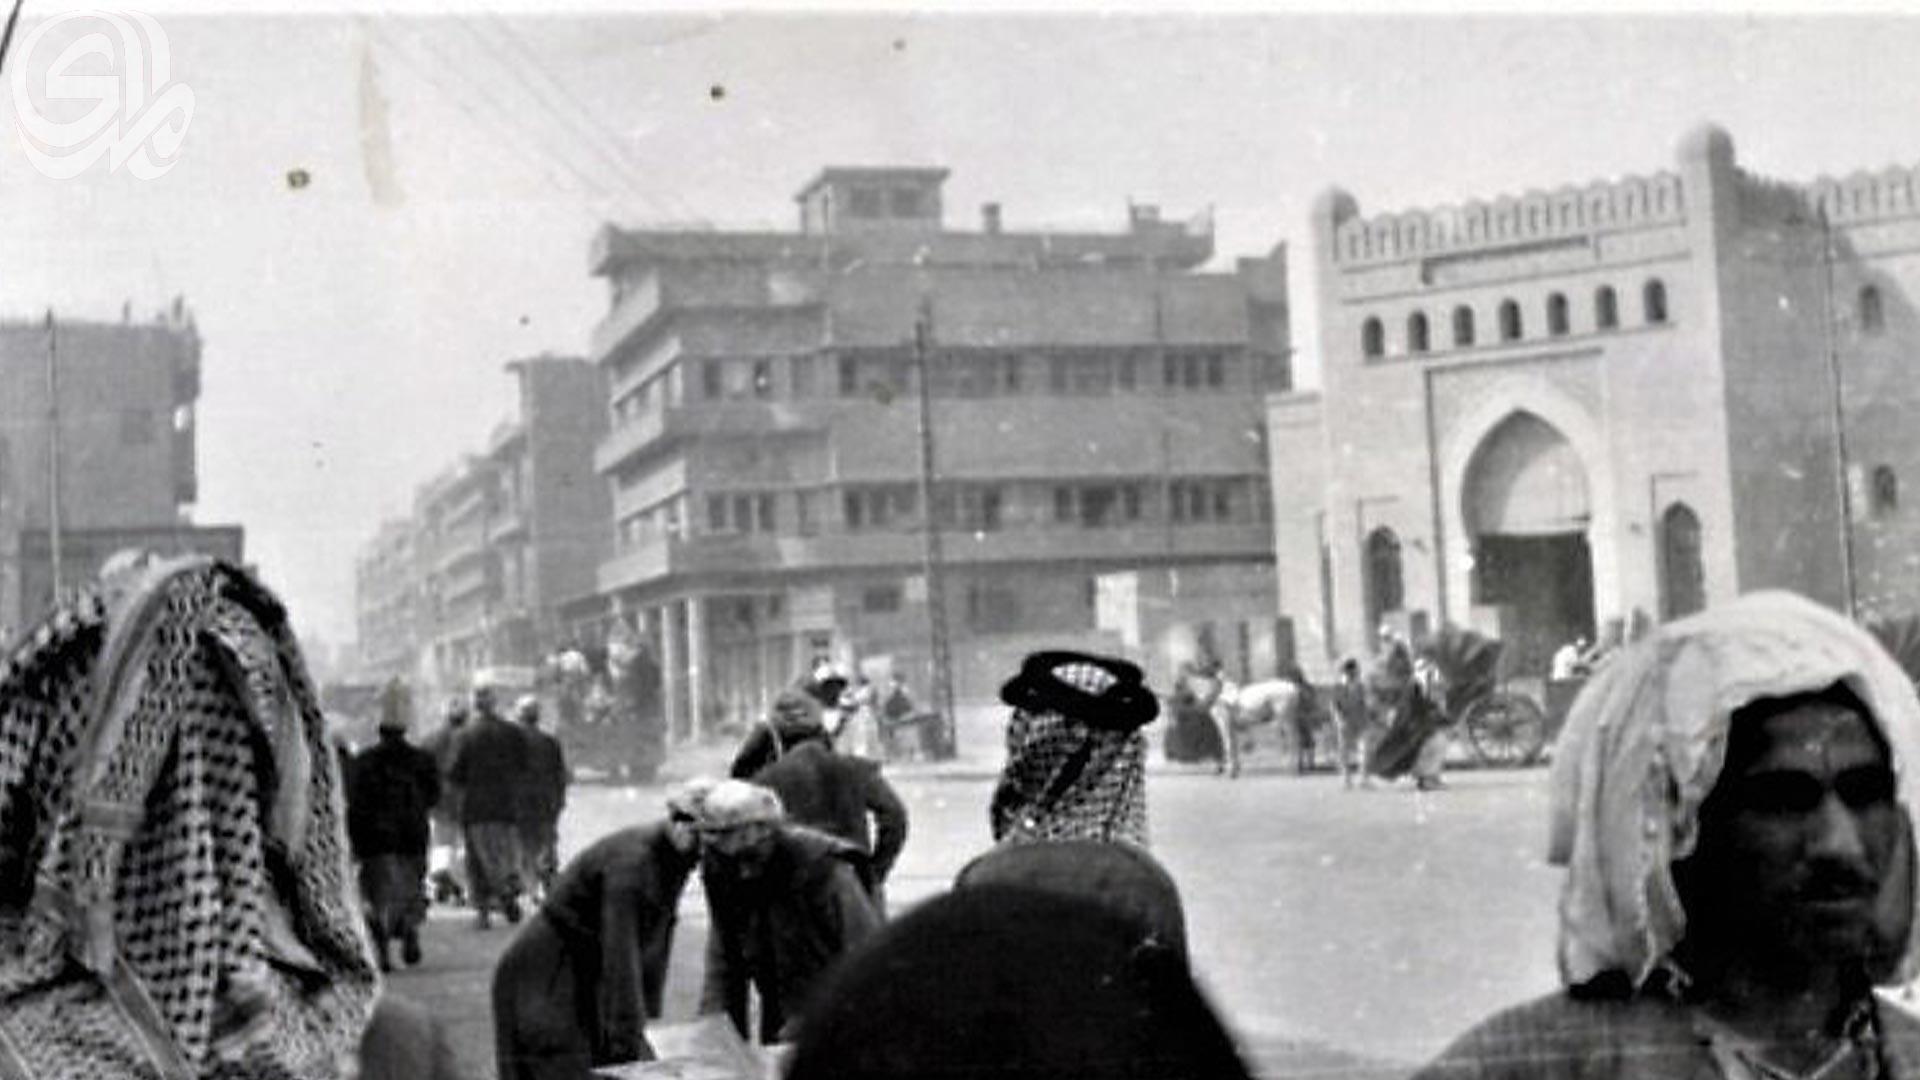 جولة في أزقة الكرخ في الجيل الماضي.. باعة يهود في سوق (الشيخ صندل)